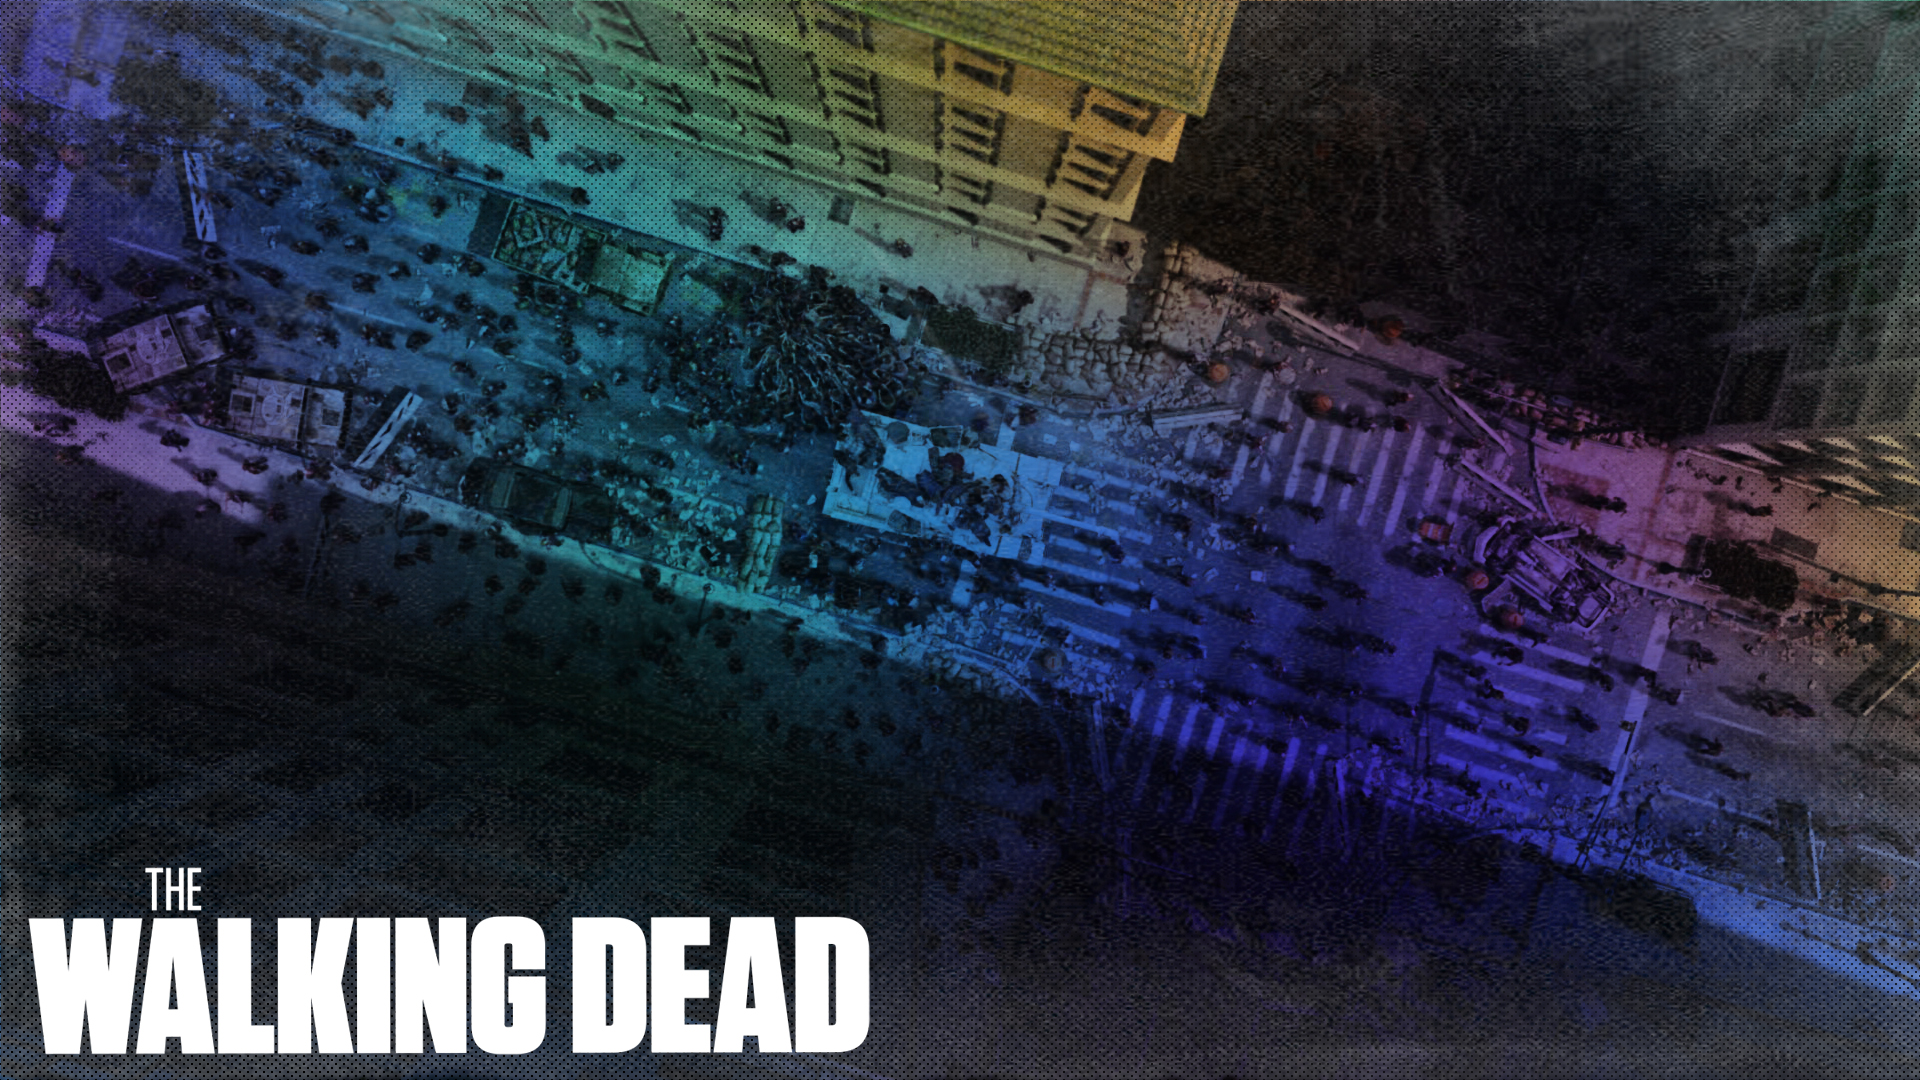 The Walking Dead Wallpaper 03 by mtzGrafen